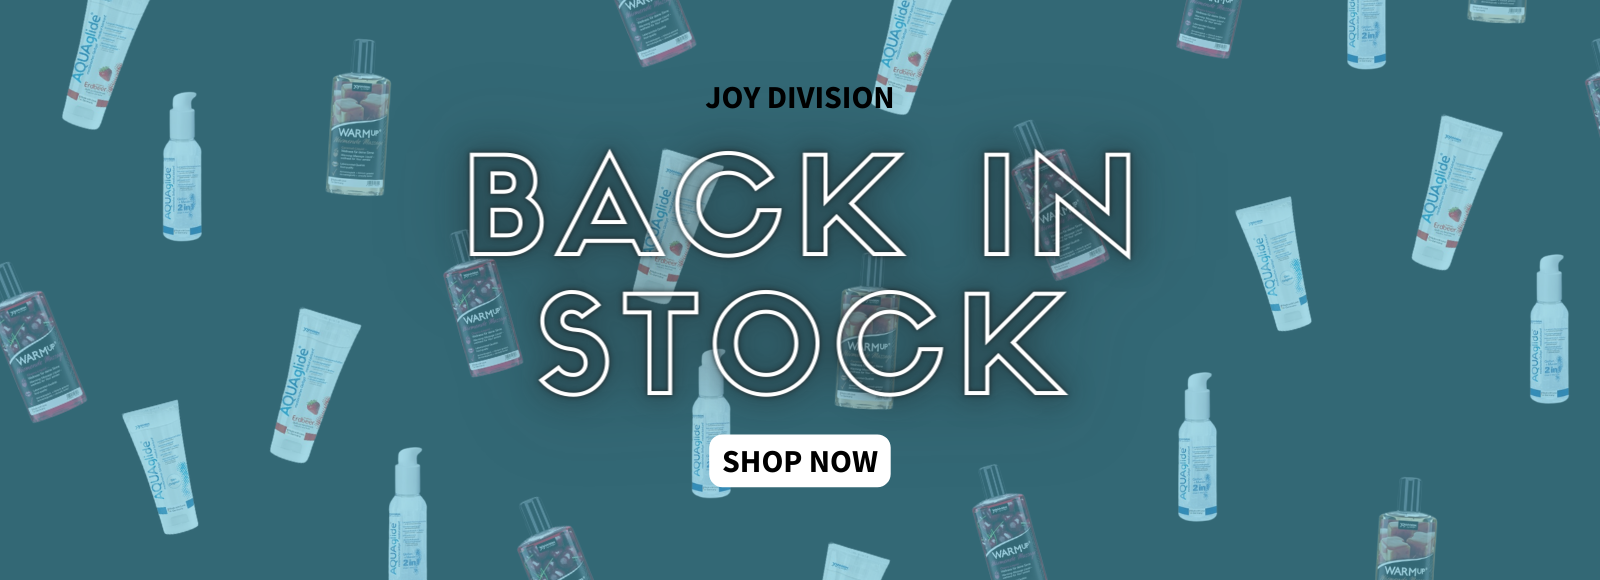 Joy Division Back in Stock